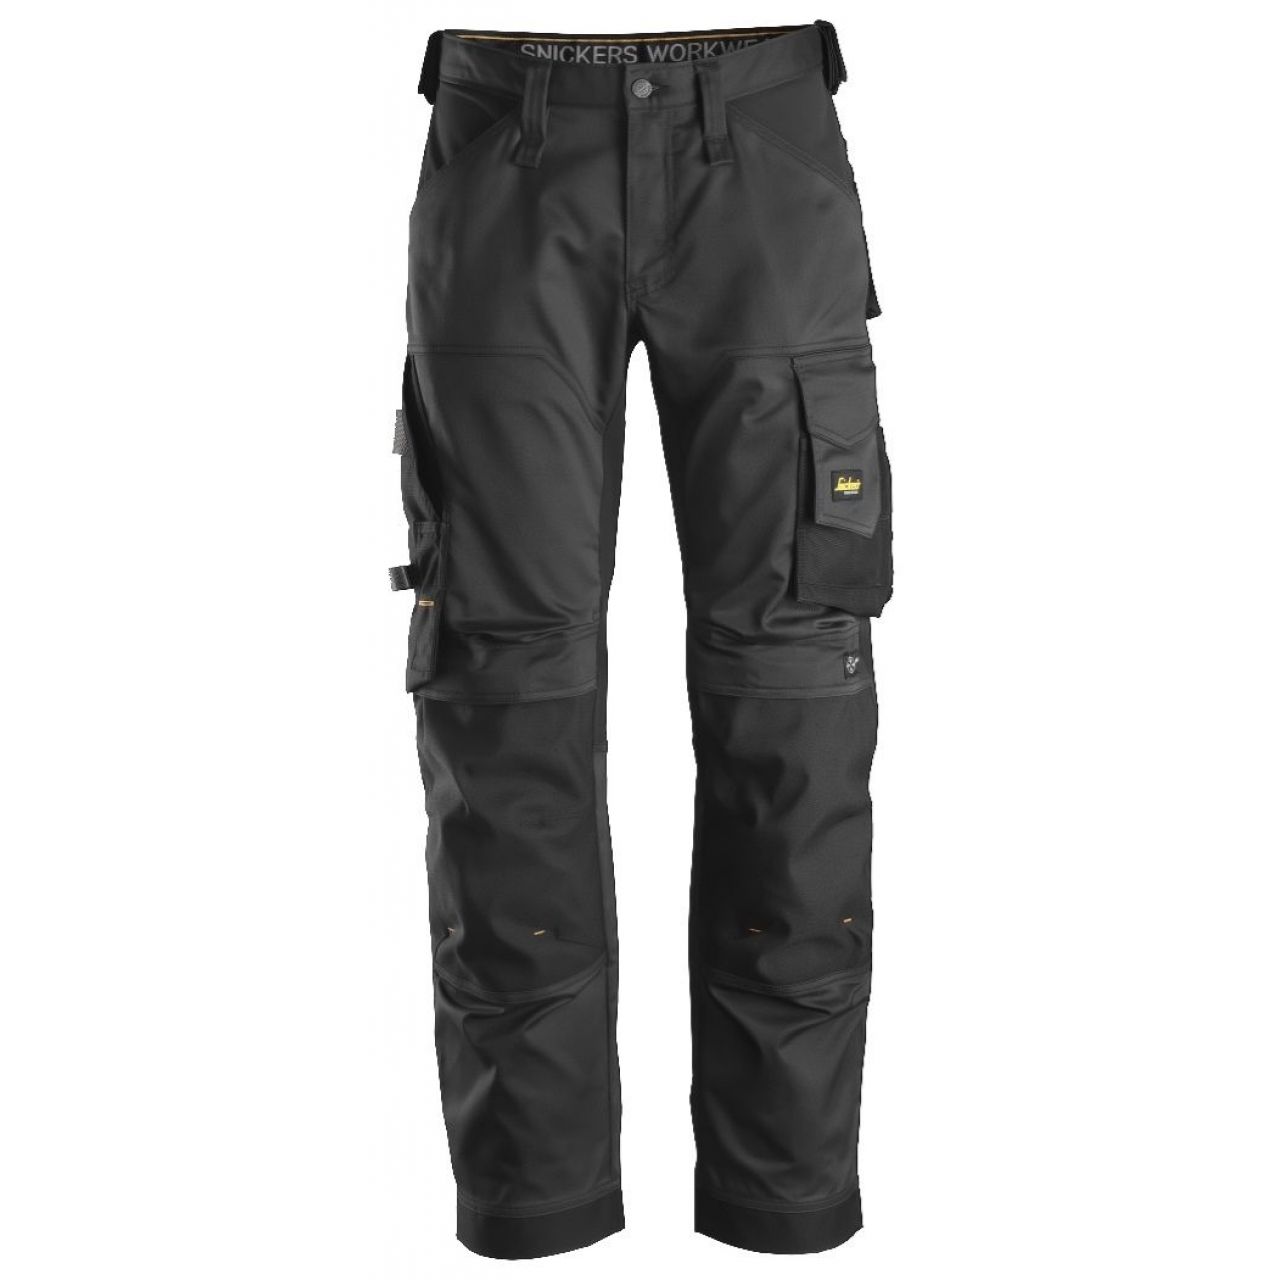 Pantalon elastico ajuste holgado AllroundWork negro talla 254